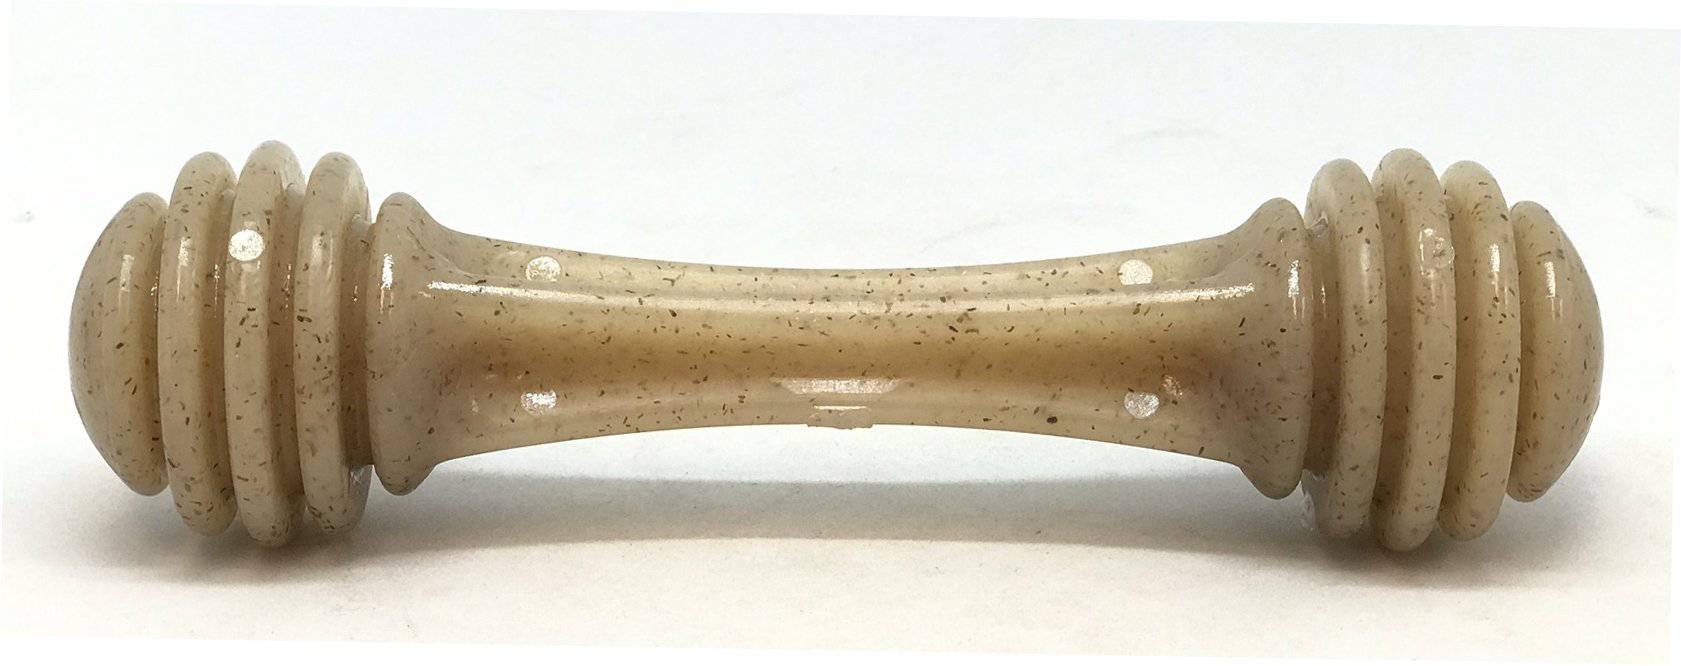 Ultra-Durable Nylon Dog Chew Toy - Honey Bone